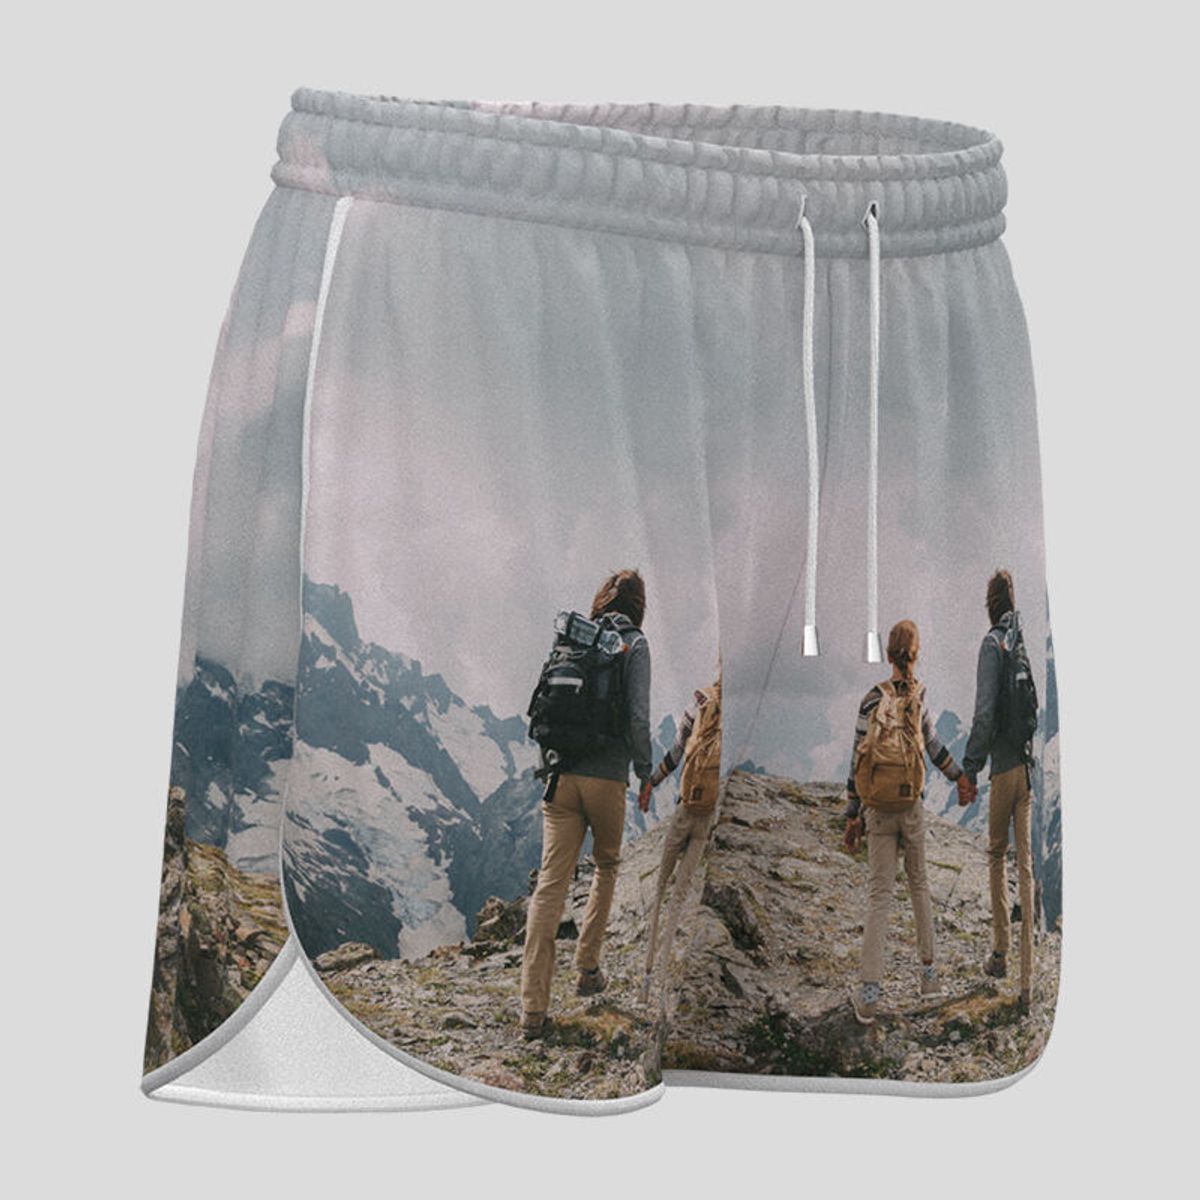 Custom Women's Shorts For Running